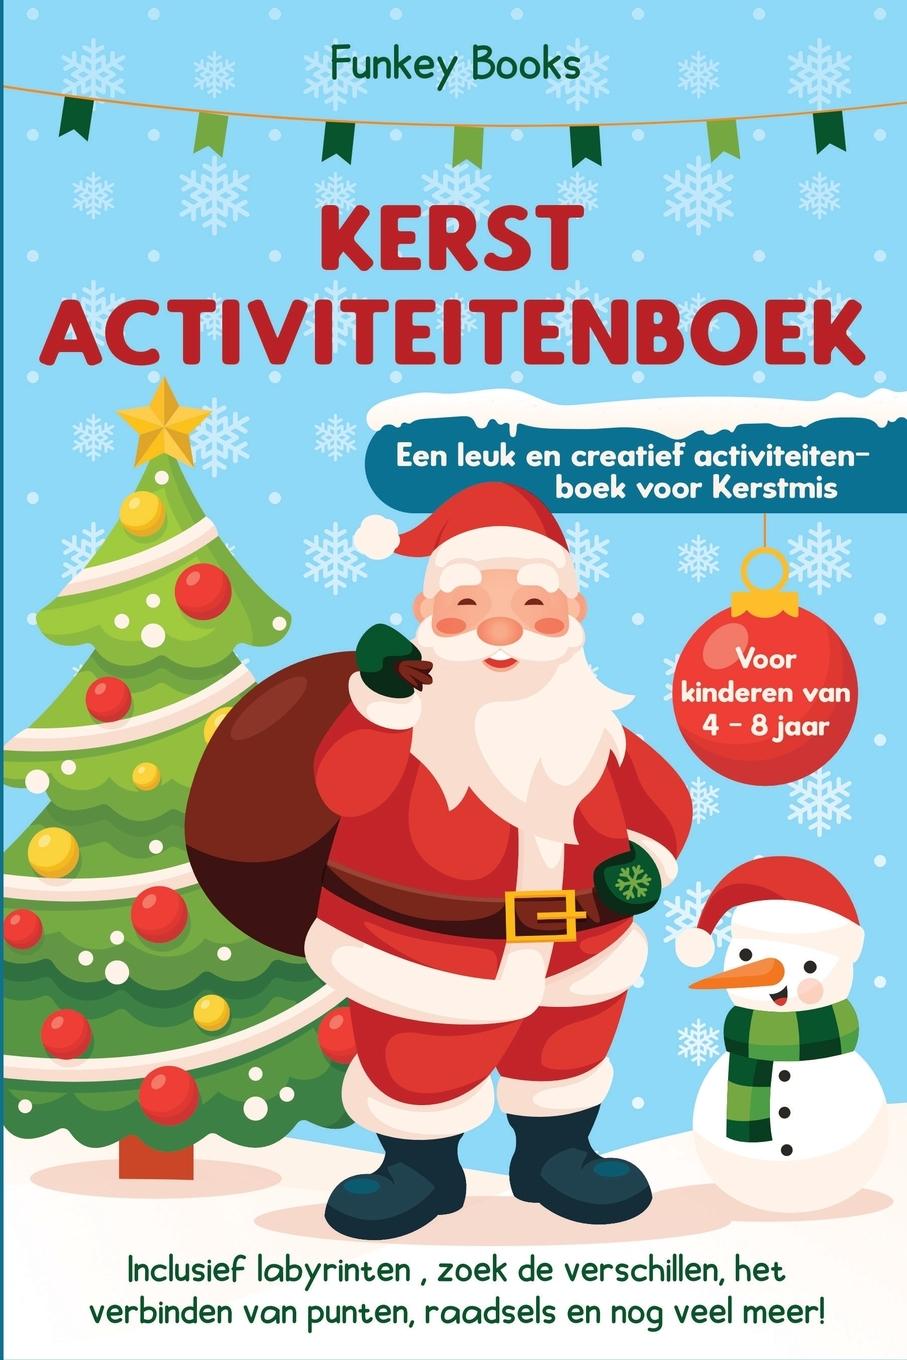 Kniha Kerst Activiteitenboek voor kinderen van 4 tot 8 jaar - Een leuk en creatief activiteitenboek voor Kerstmis 